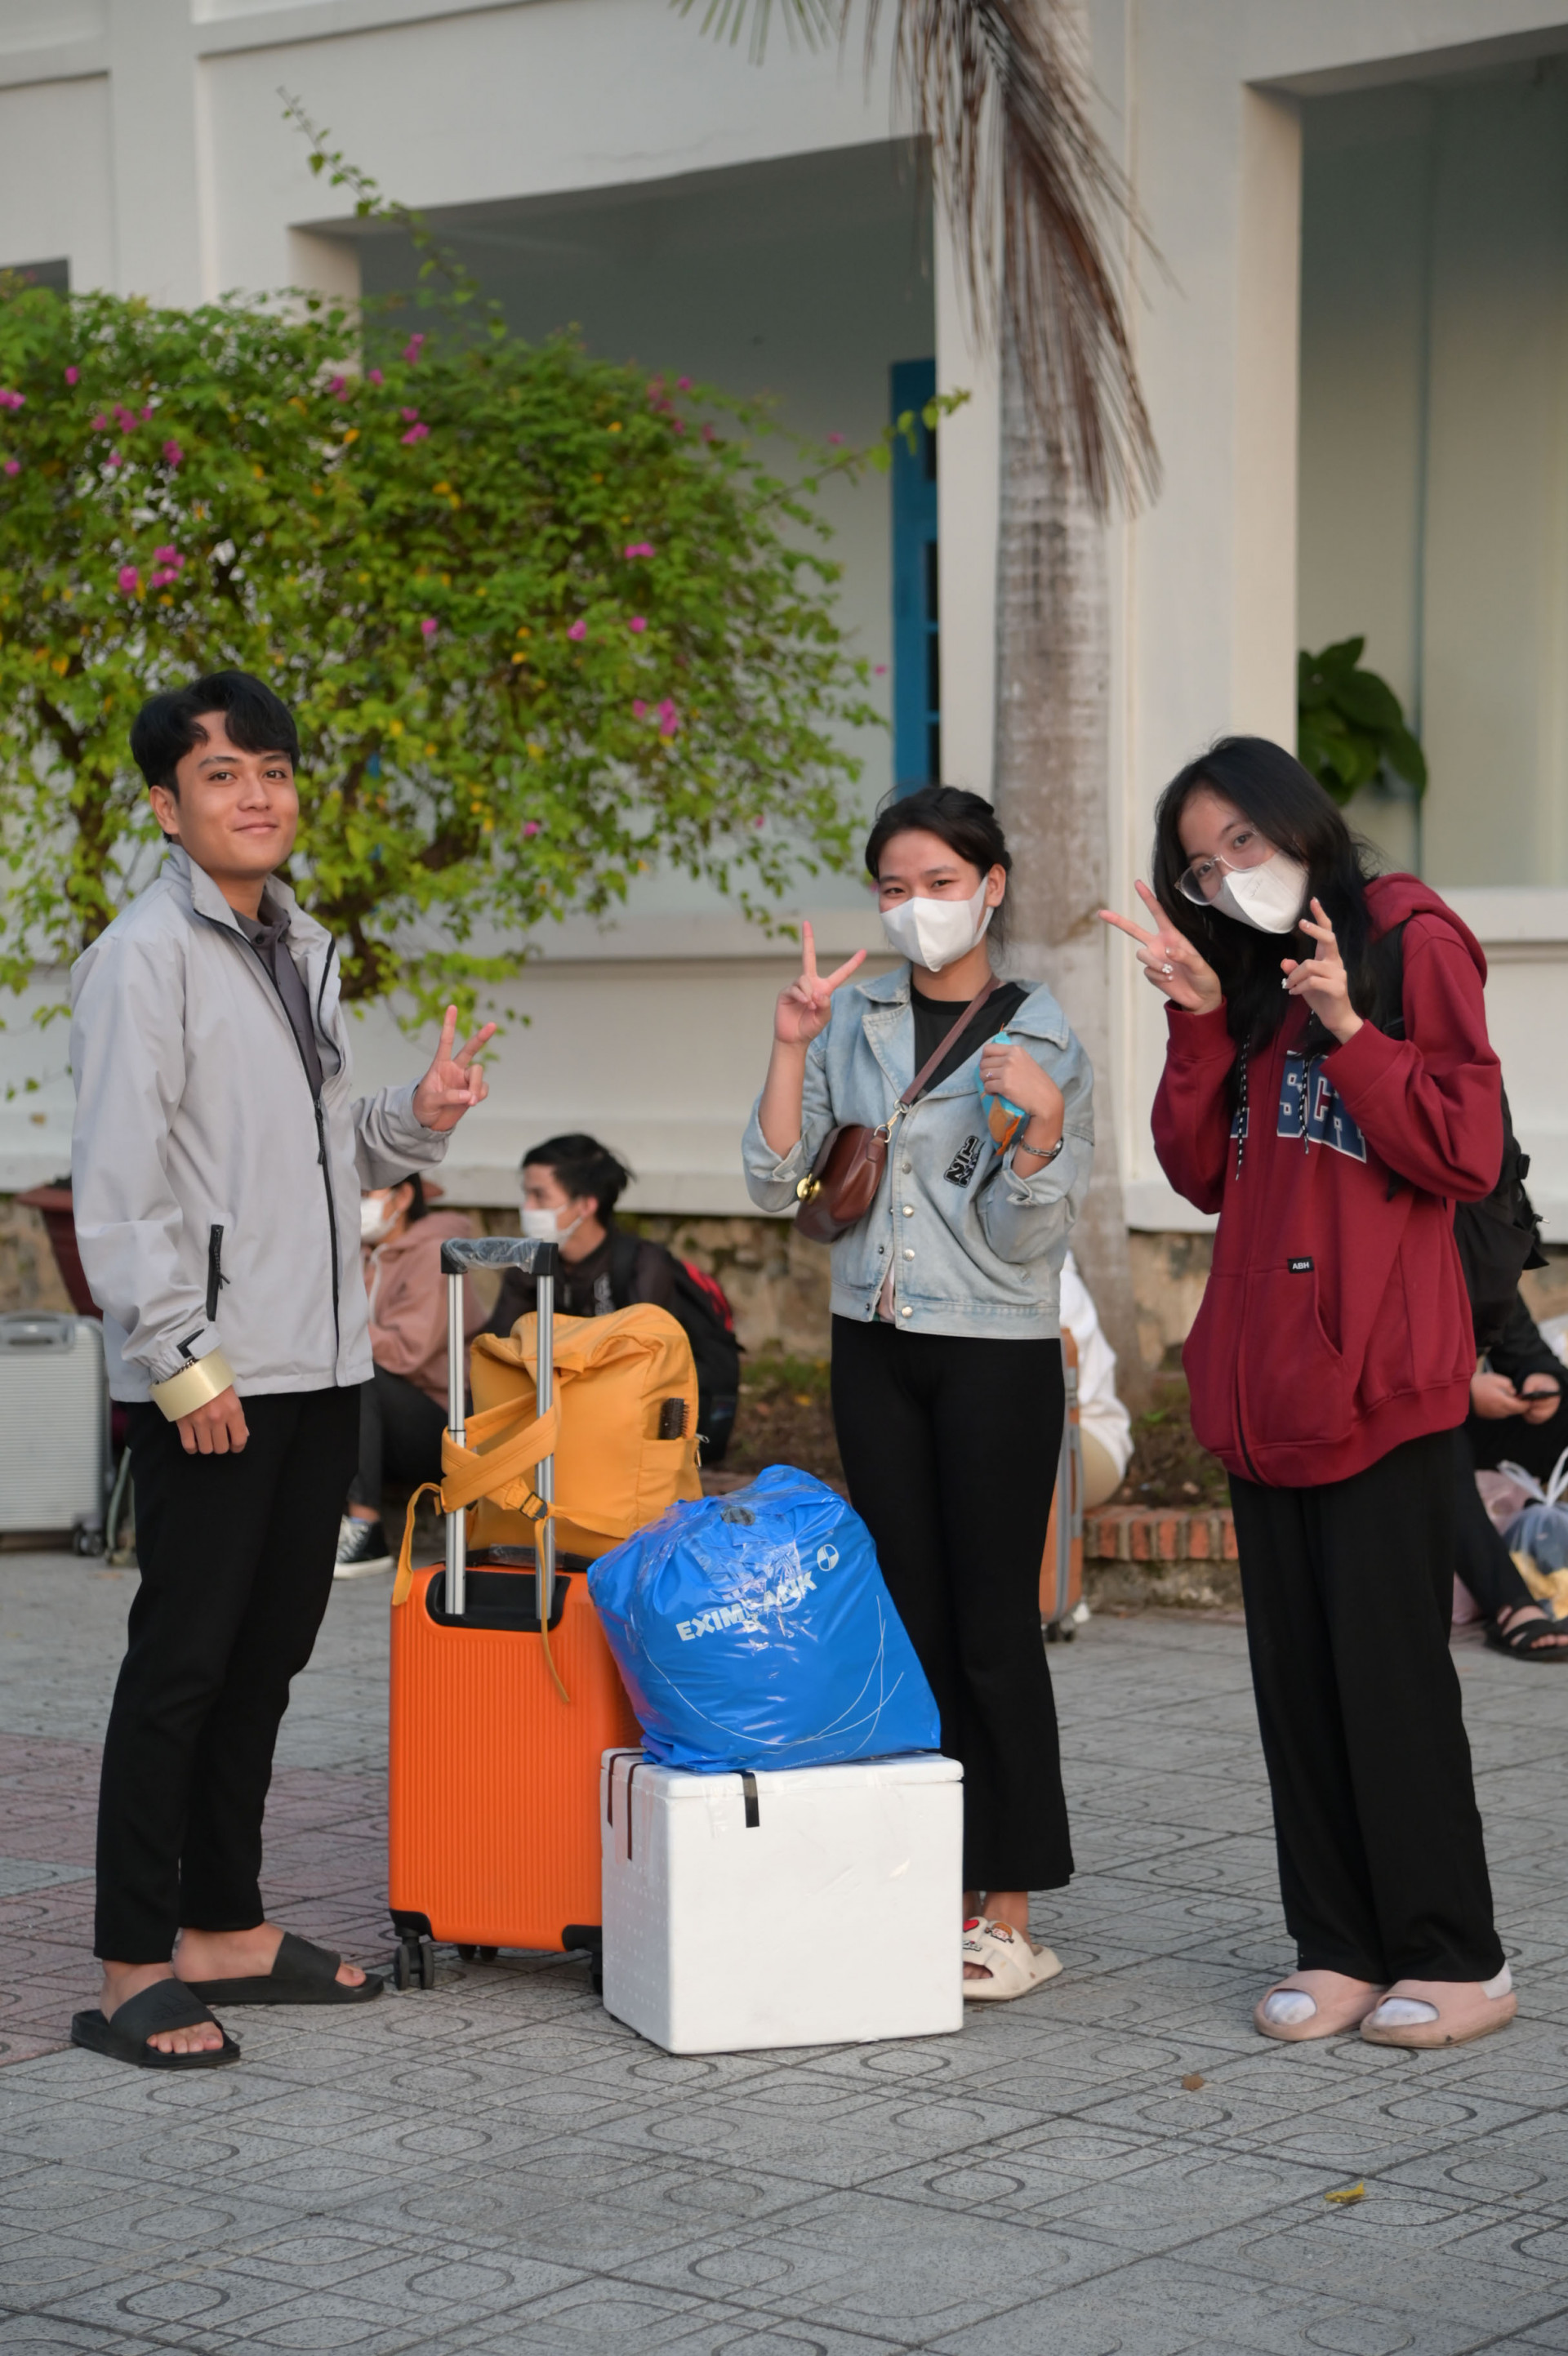 Có mặt từ sớm, sinh viên Nguyễn Hoàng Kim Vi (ở giữa) cùng các bạn không khỏi háo hức chờ đến giờ khởi hành, Vi sẽ lên chuyến xe Xuân yêu thương để về quê nhà Quảng Ngãi